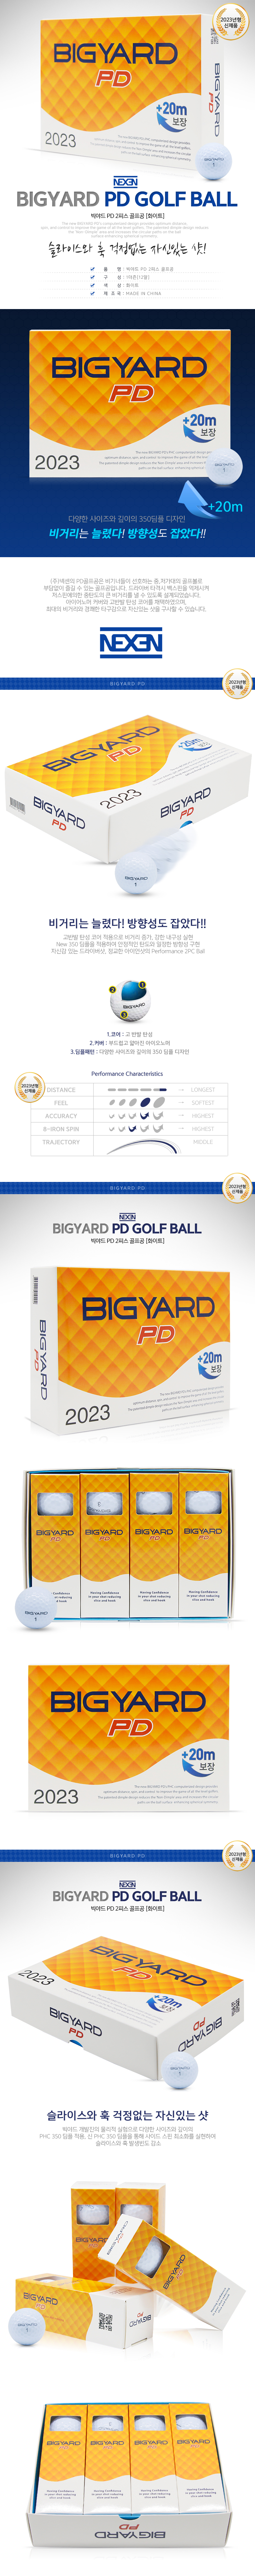 newbigyard_pd_2pcs_golfball.jpg